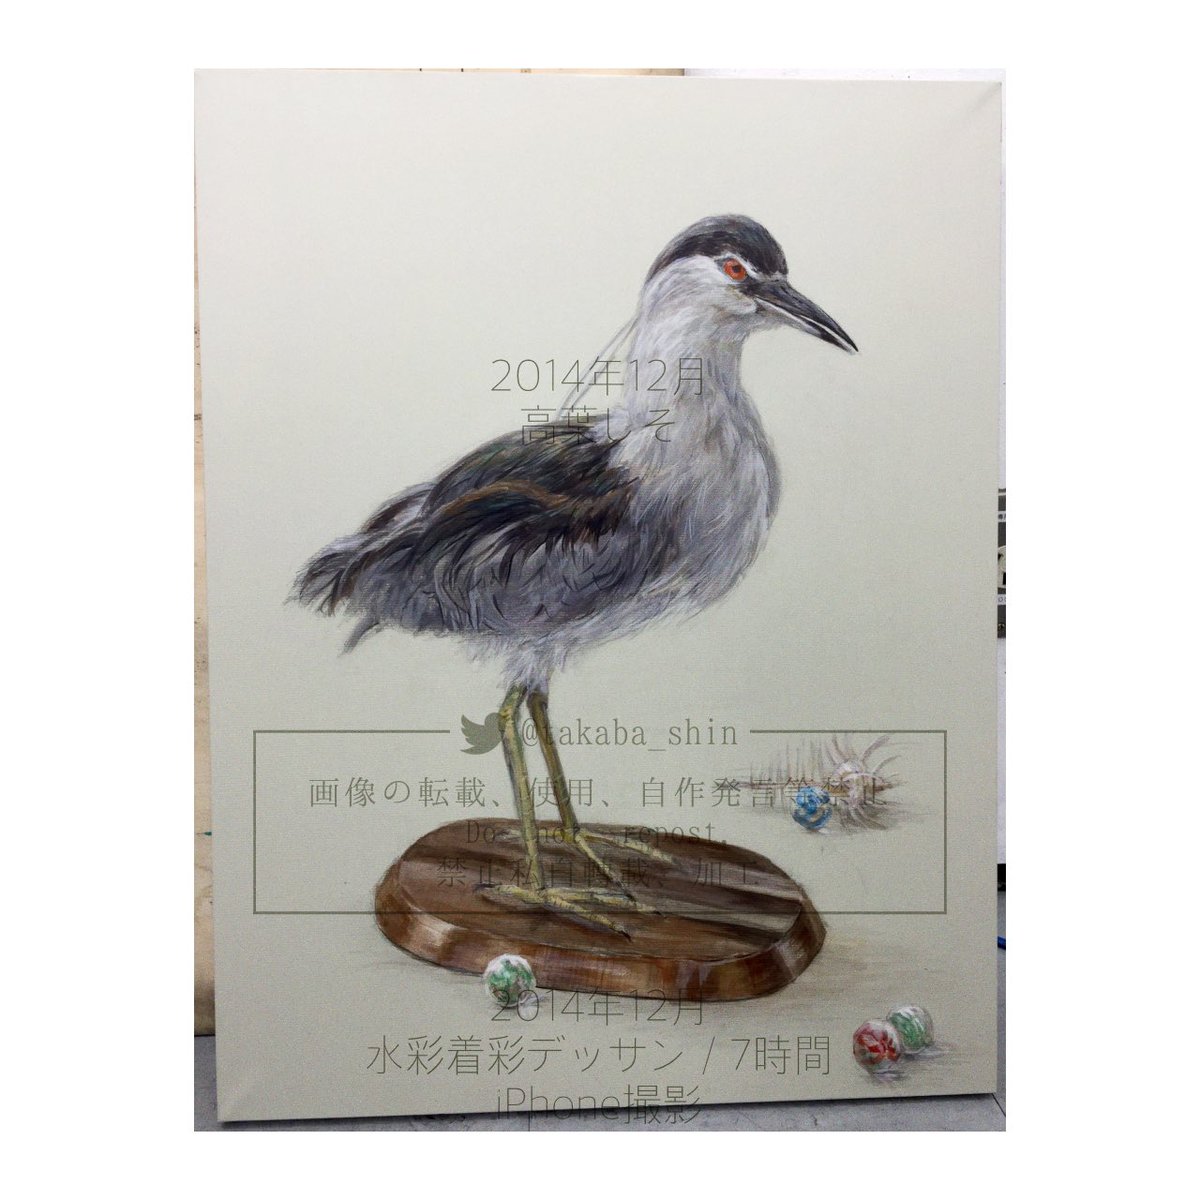 【過去絵投稿】課題制作その2
2014年
⑴多分画塾で描いたやつおそらく5時間前後
⑵デッサンのテストで描いたやつ2時間
⑶画塾で描いた鳥の剥製7時間
#shisoART 